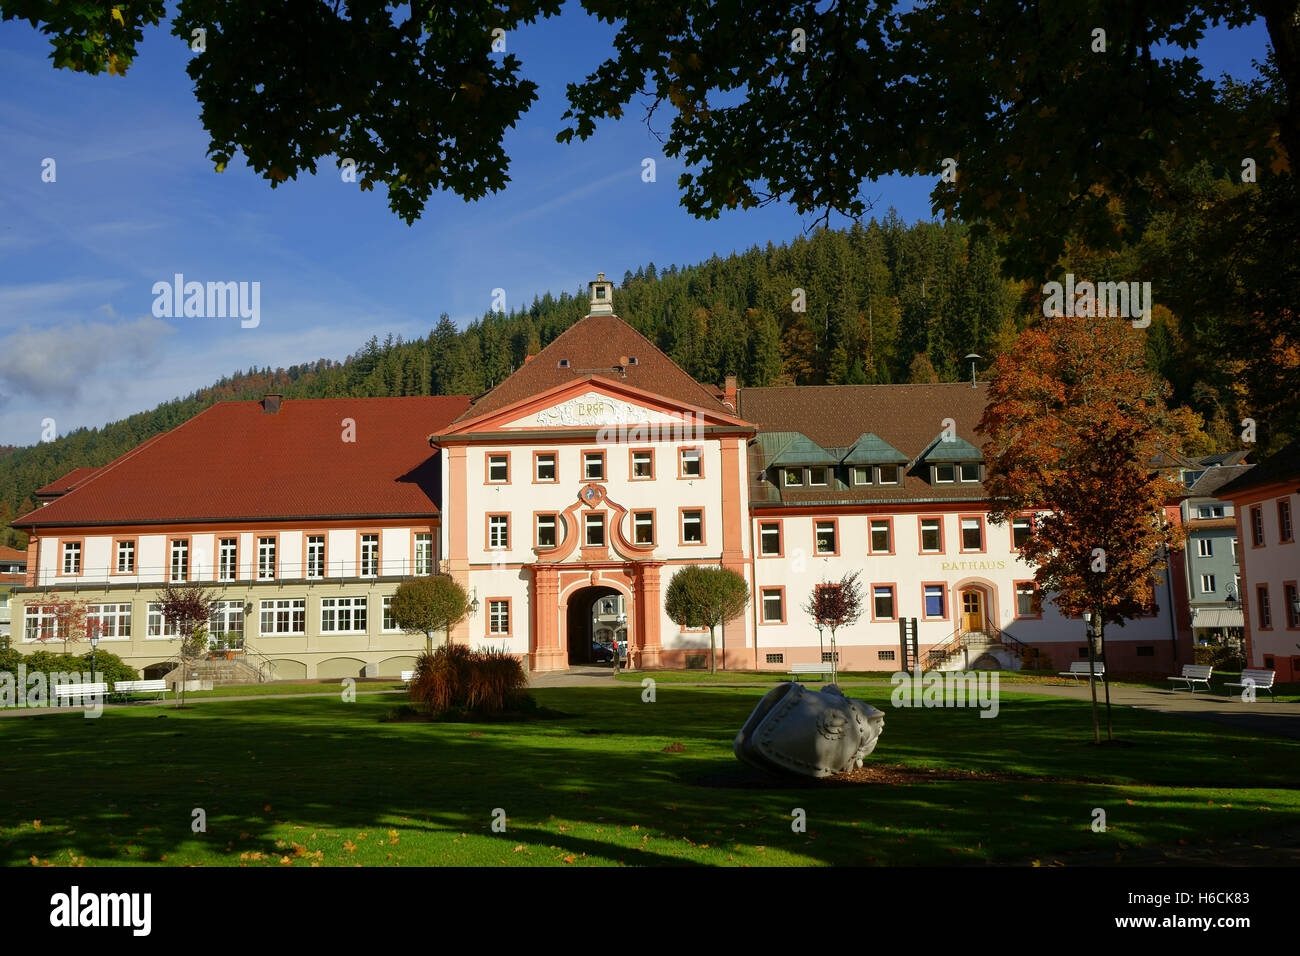 Rathaus o Ayuntamiento, con Park, la ciudad de Sankt Blasien, Selva Negra, Alemania Albtal Foto de stock